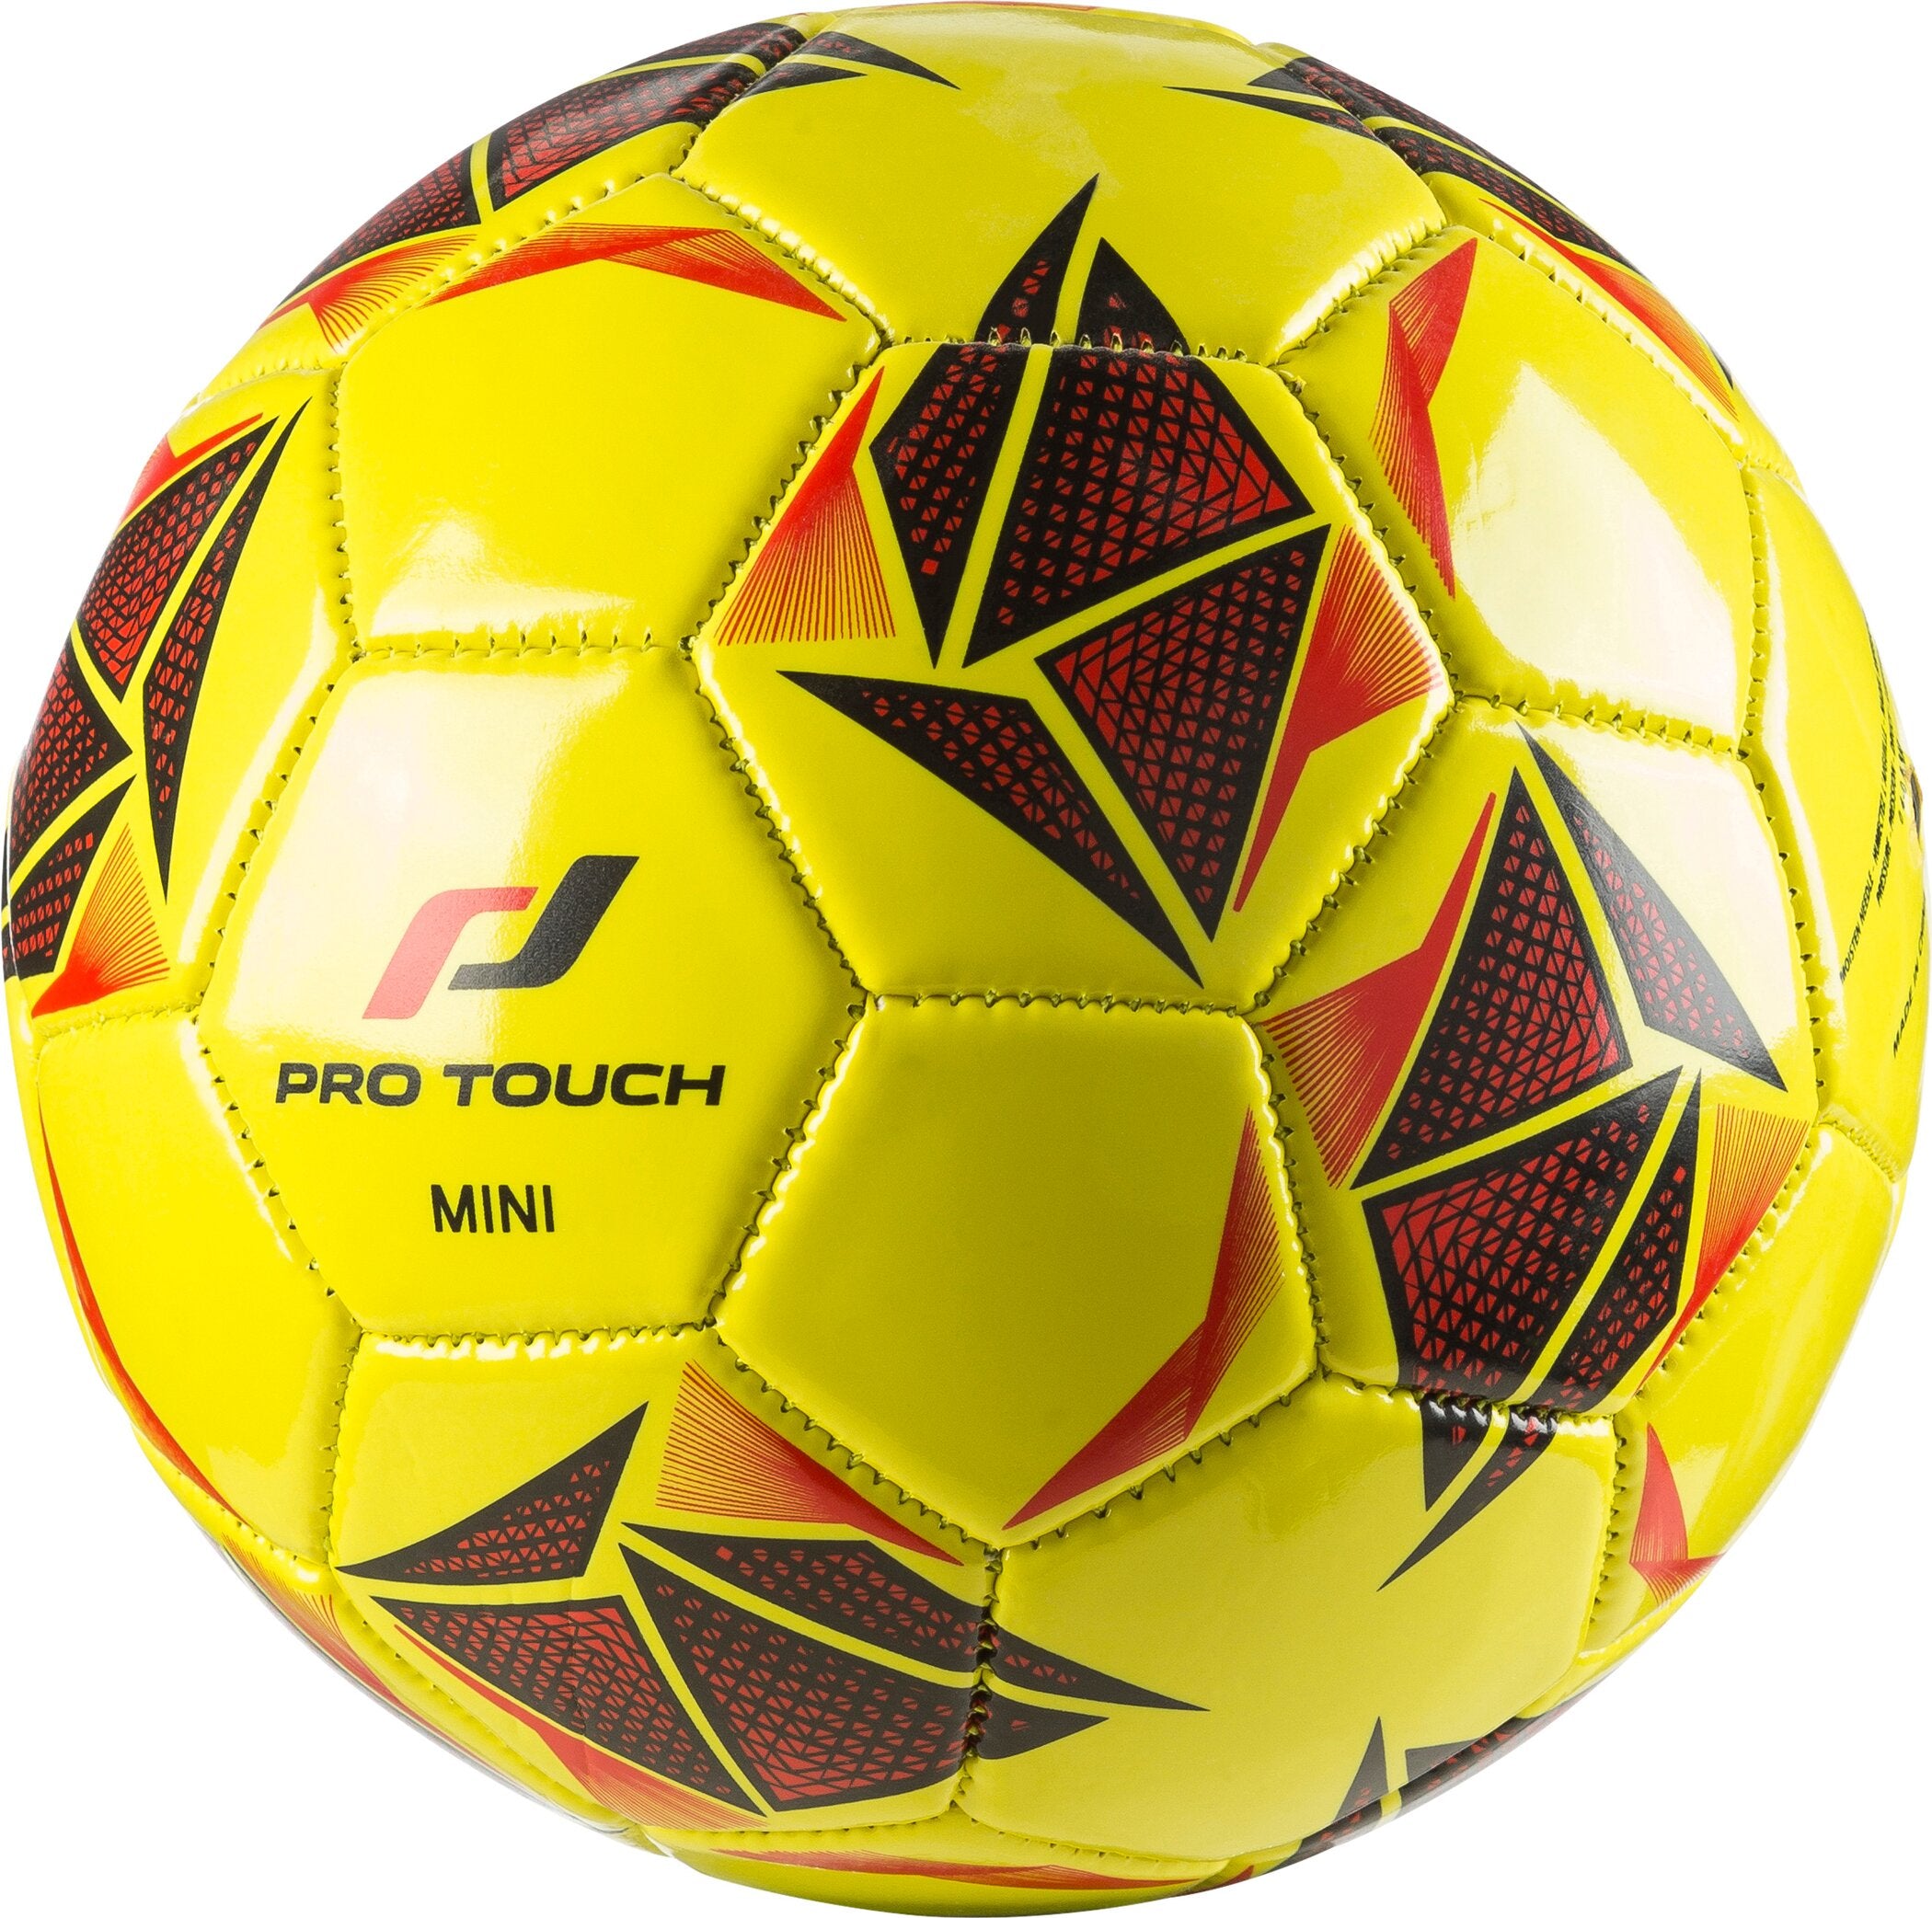 Miniatur-Fußball Force Mini